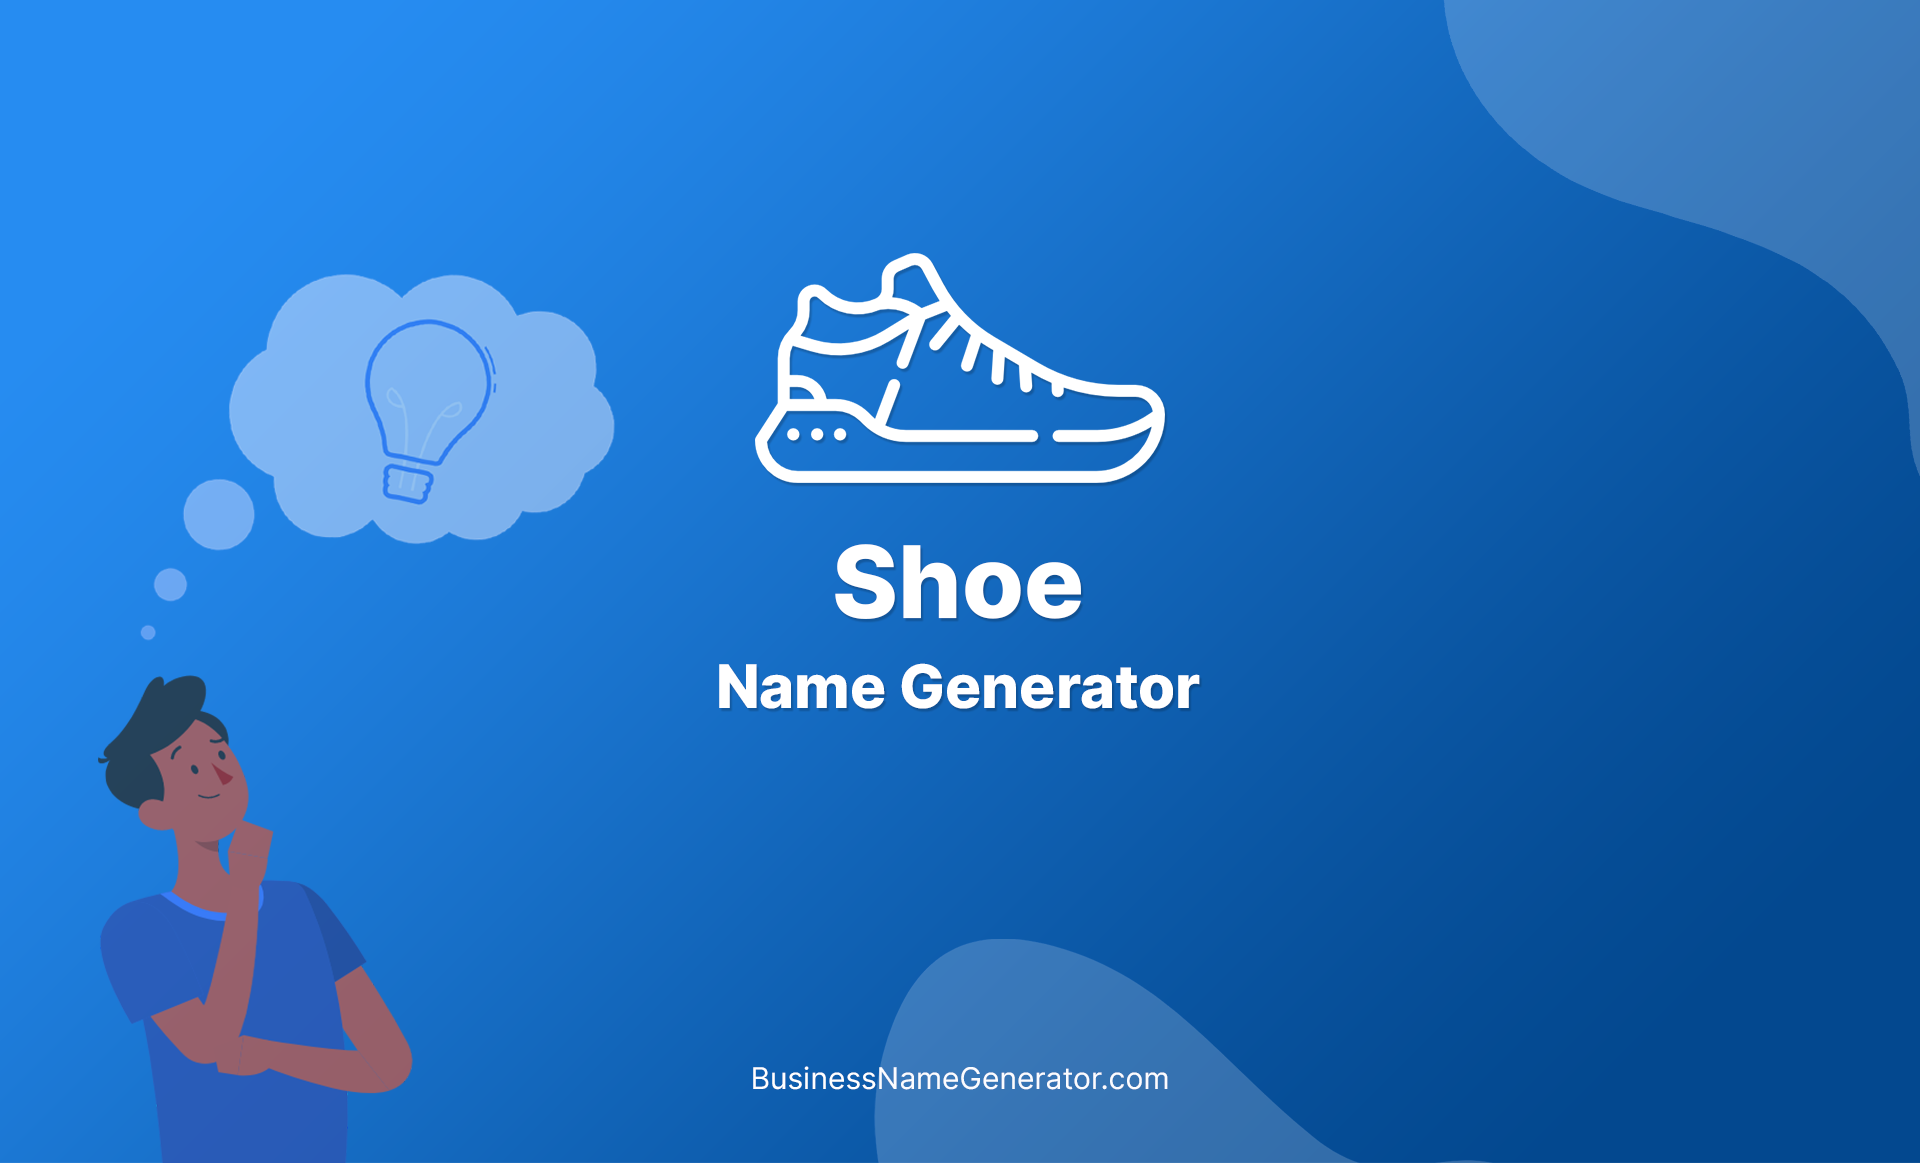 Shoe Name Generator